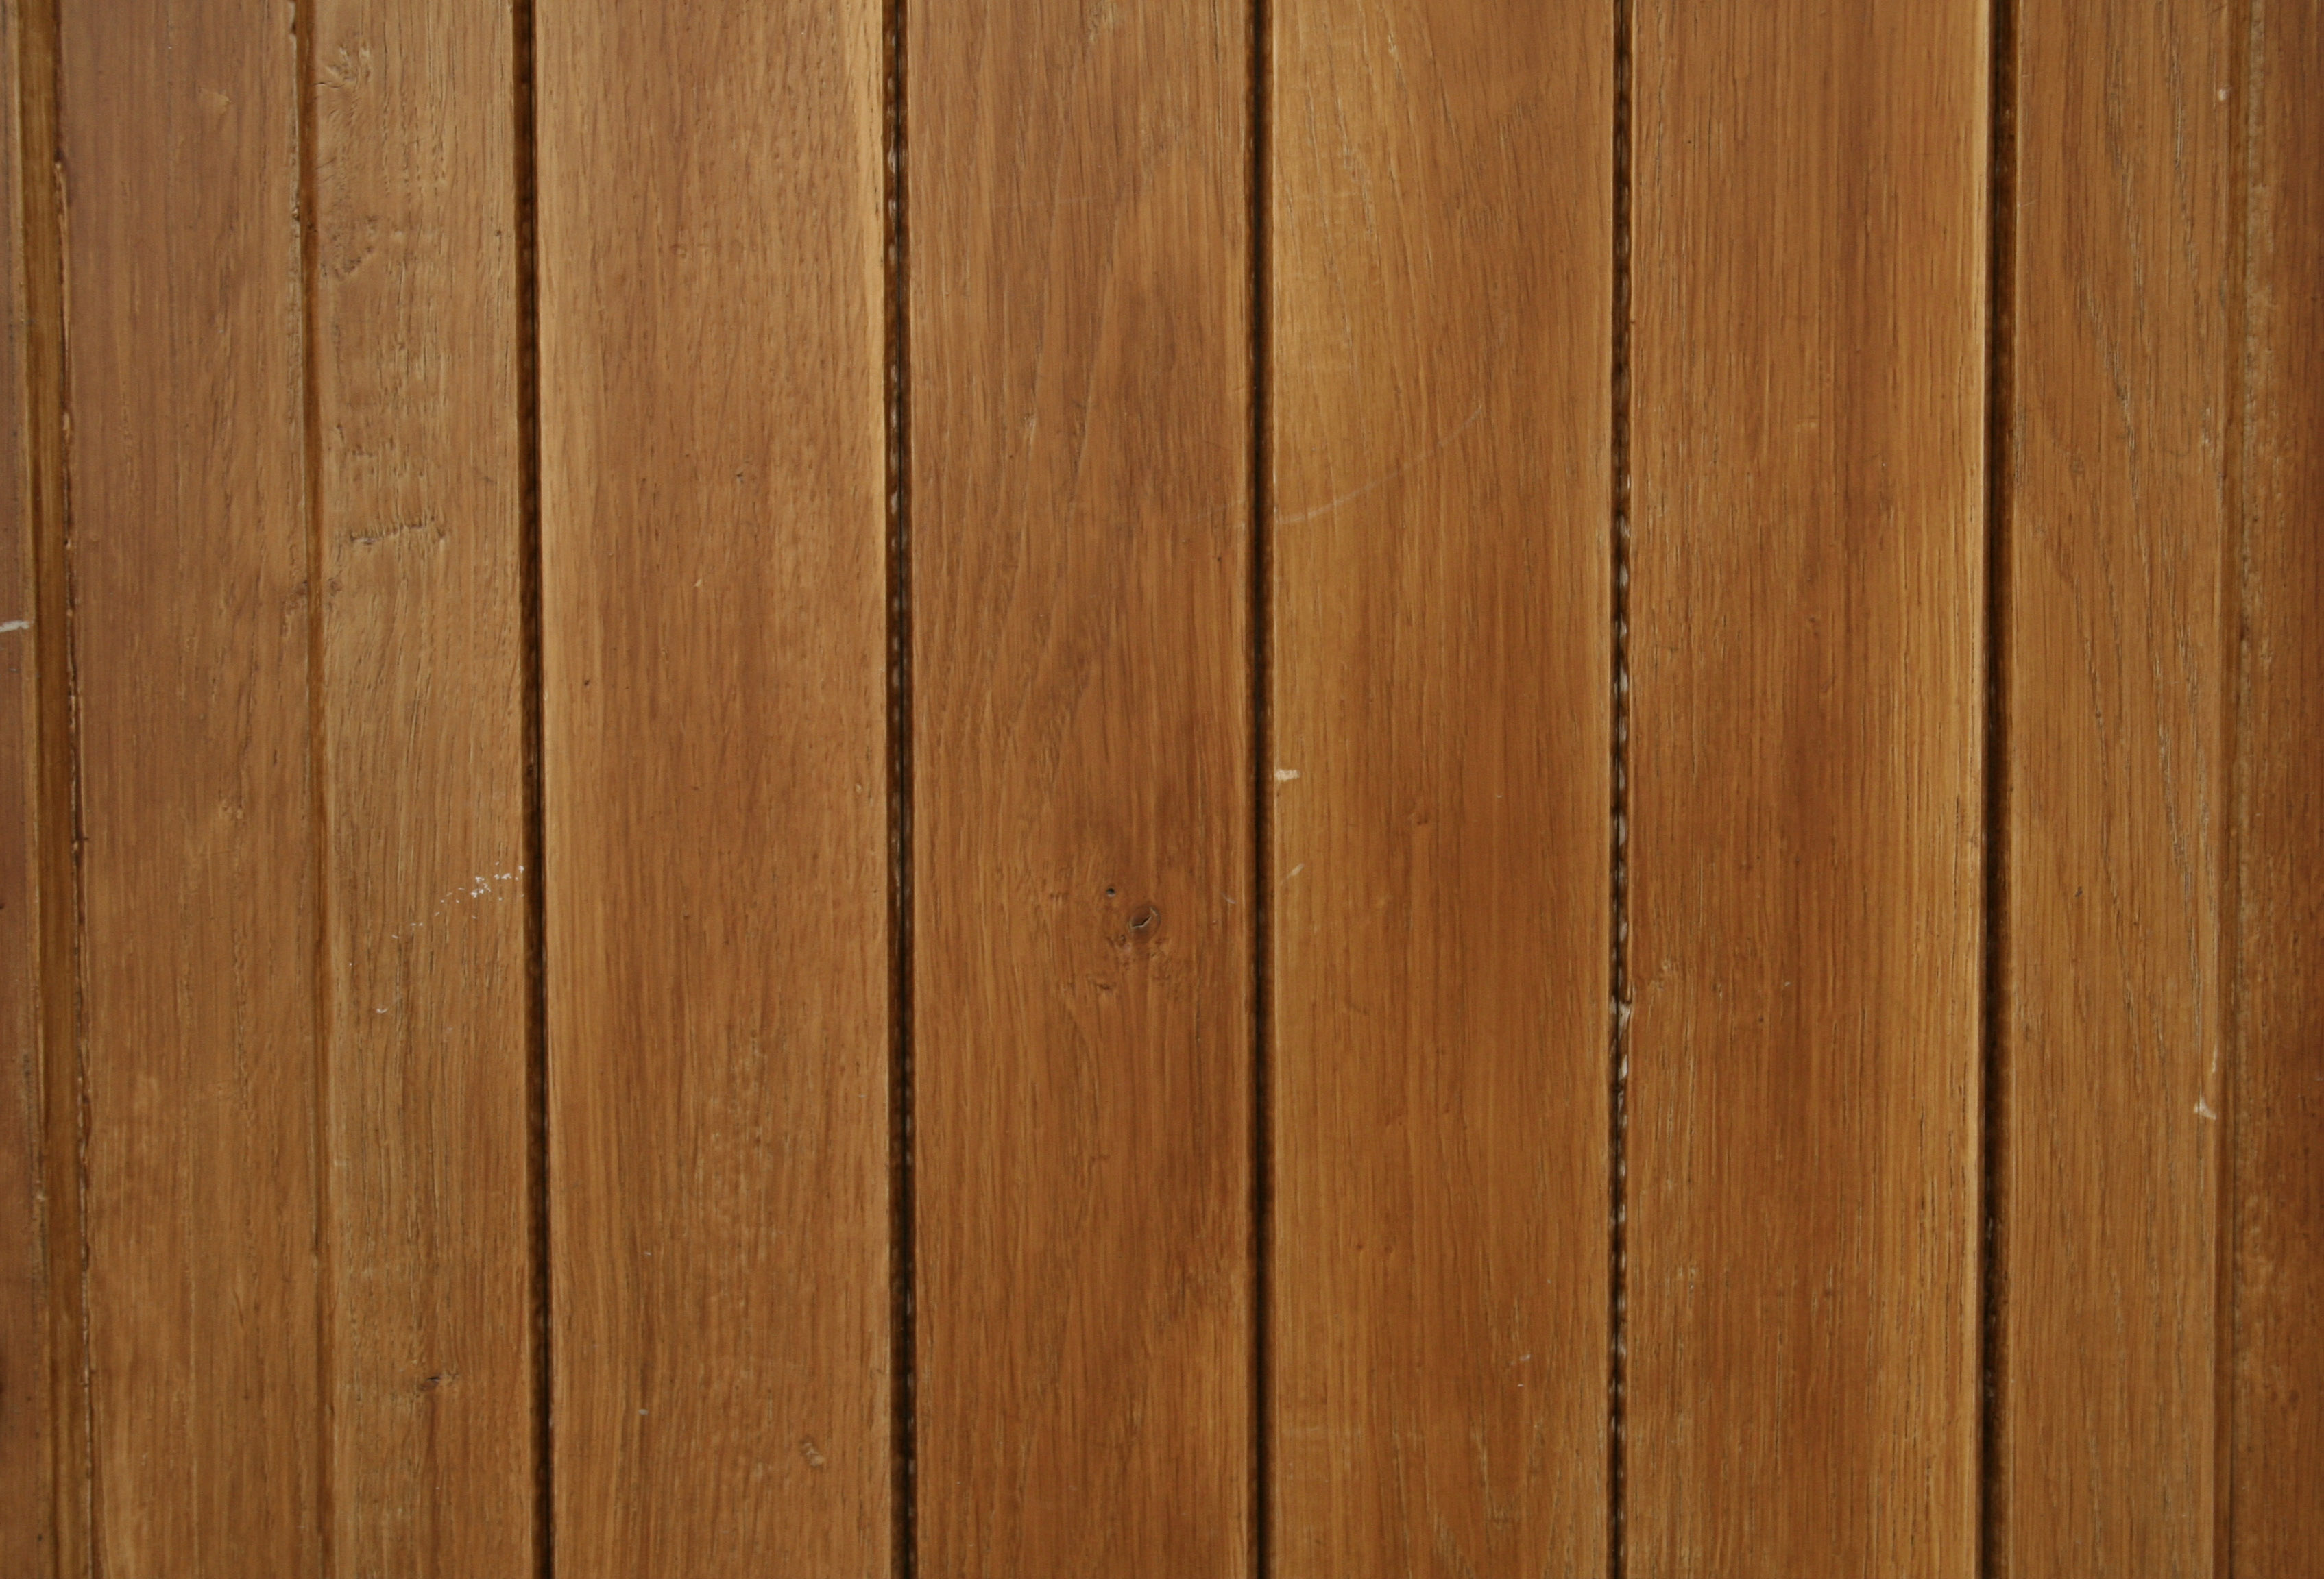 wood floor texture seamless